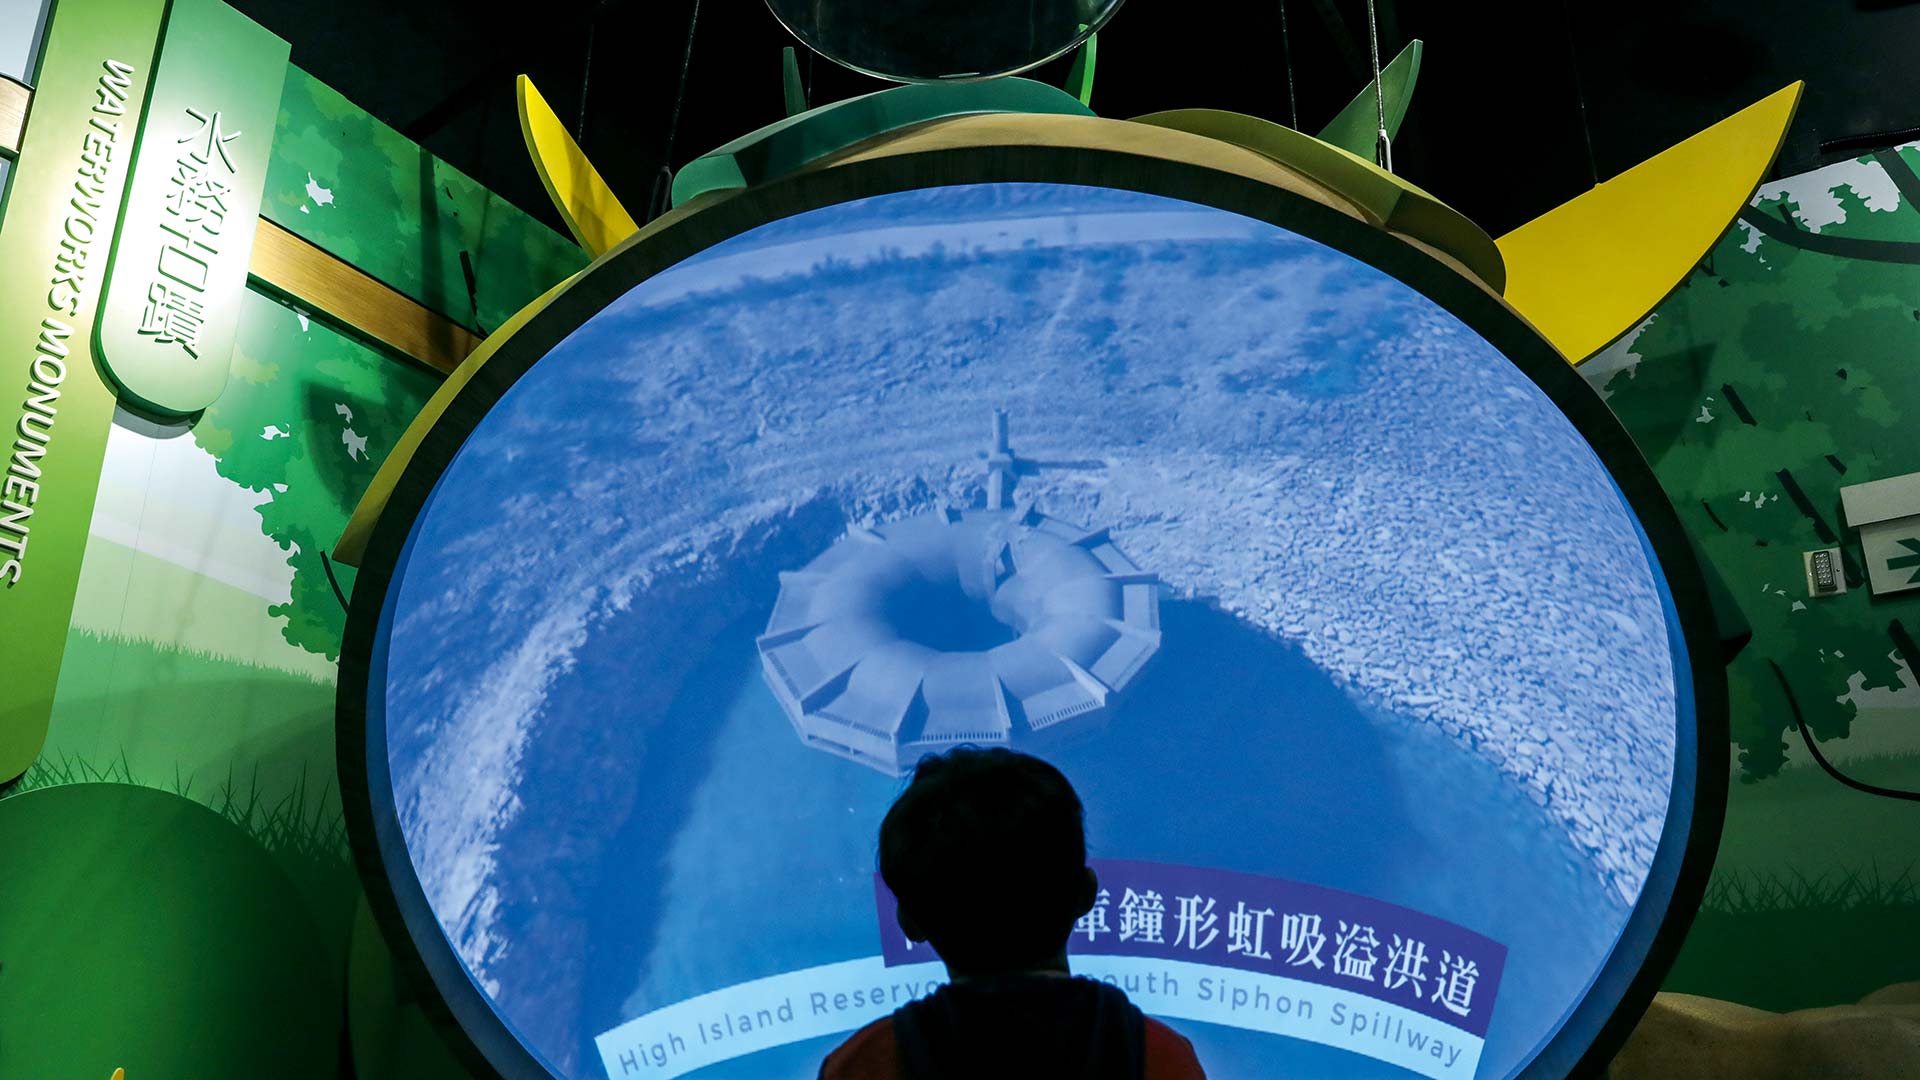 Eine neue öffentliche Bildungseinrichtung, das H2OPE Center im chinesischen Tin Shui Wa, soll das Wissen der Öffentlichkeit über den Wasserschutz verbessern.